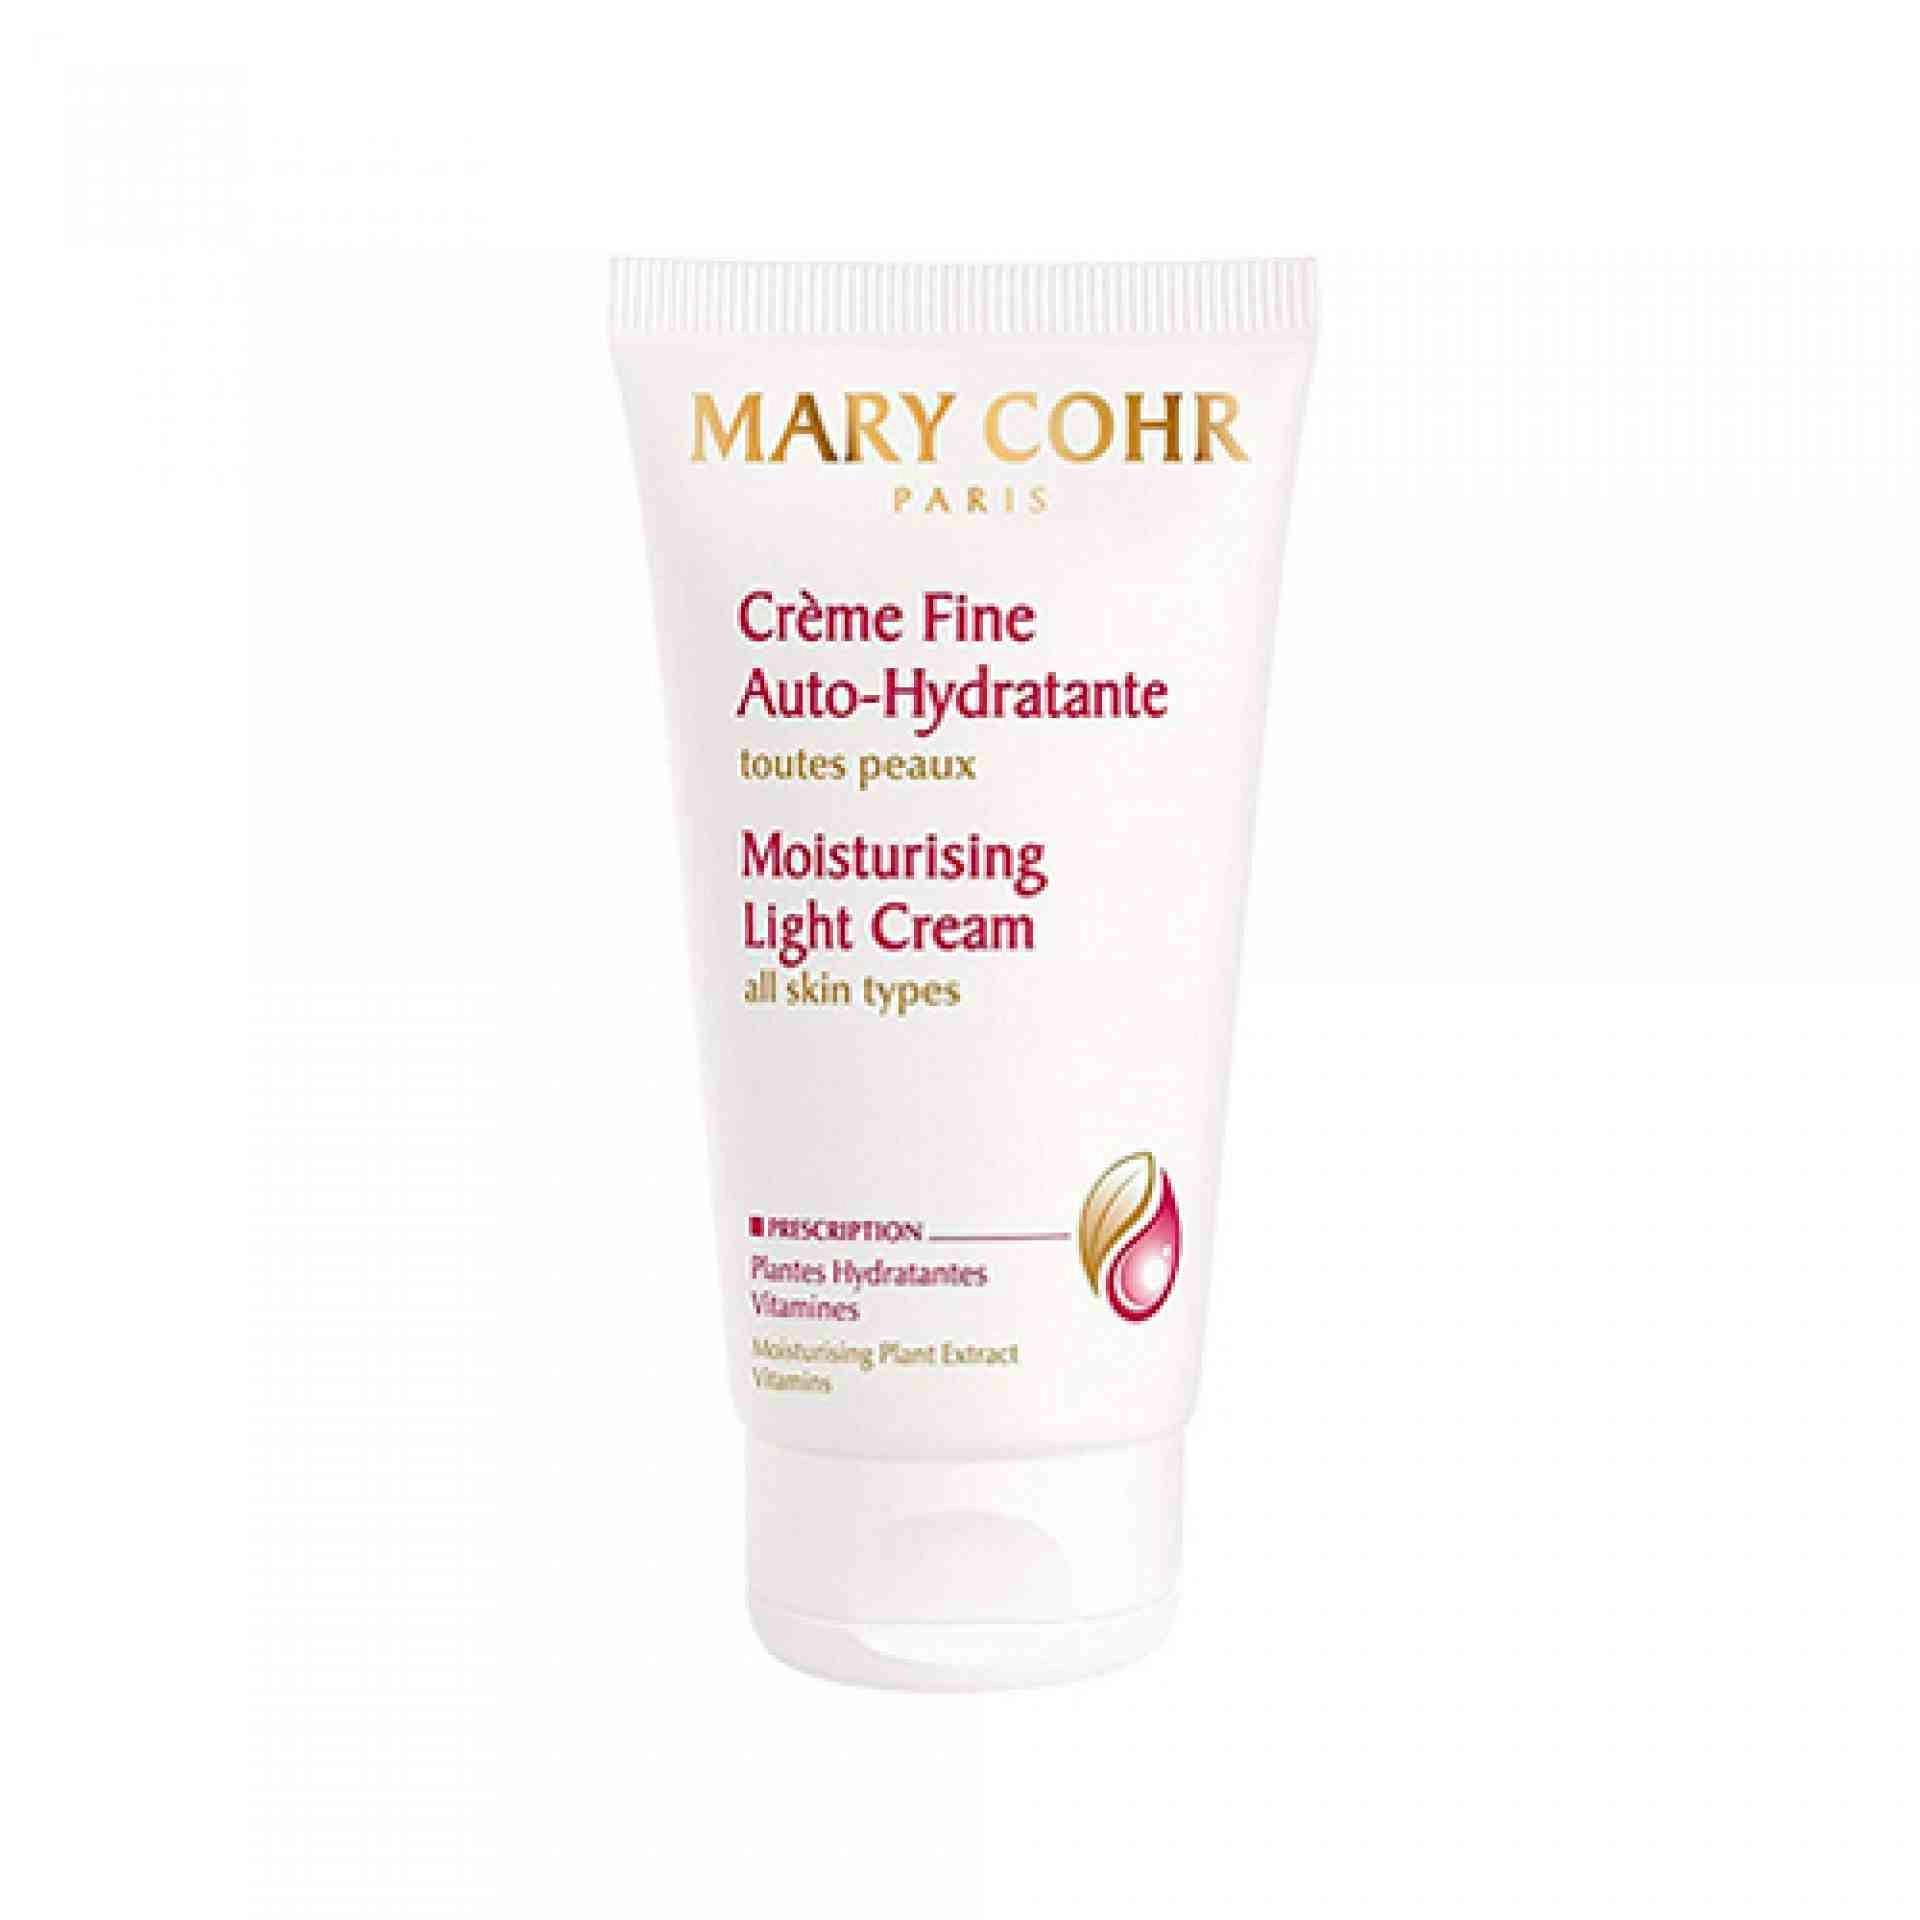 Crème Fine Auto-Hydratante | Crema Hidratante 50ml - Mary Cohr ®